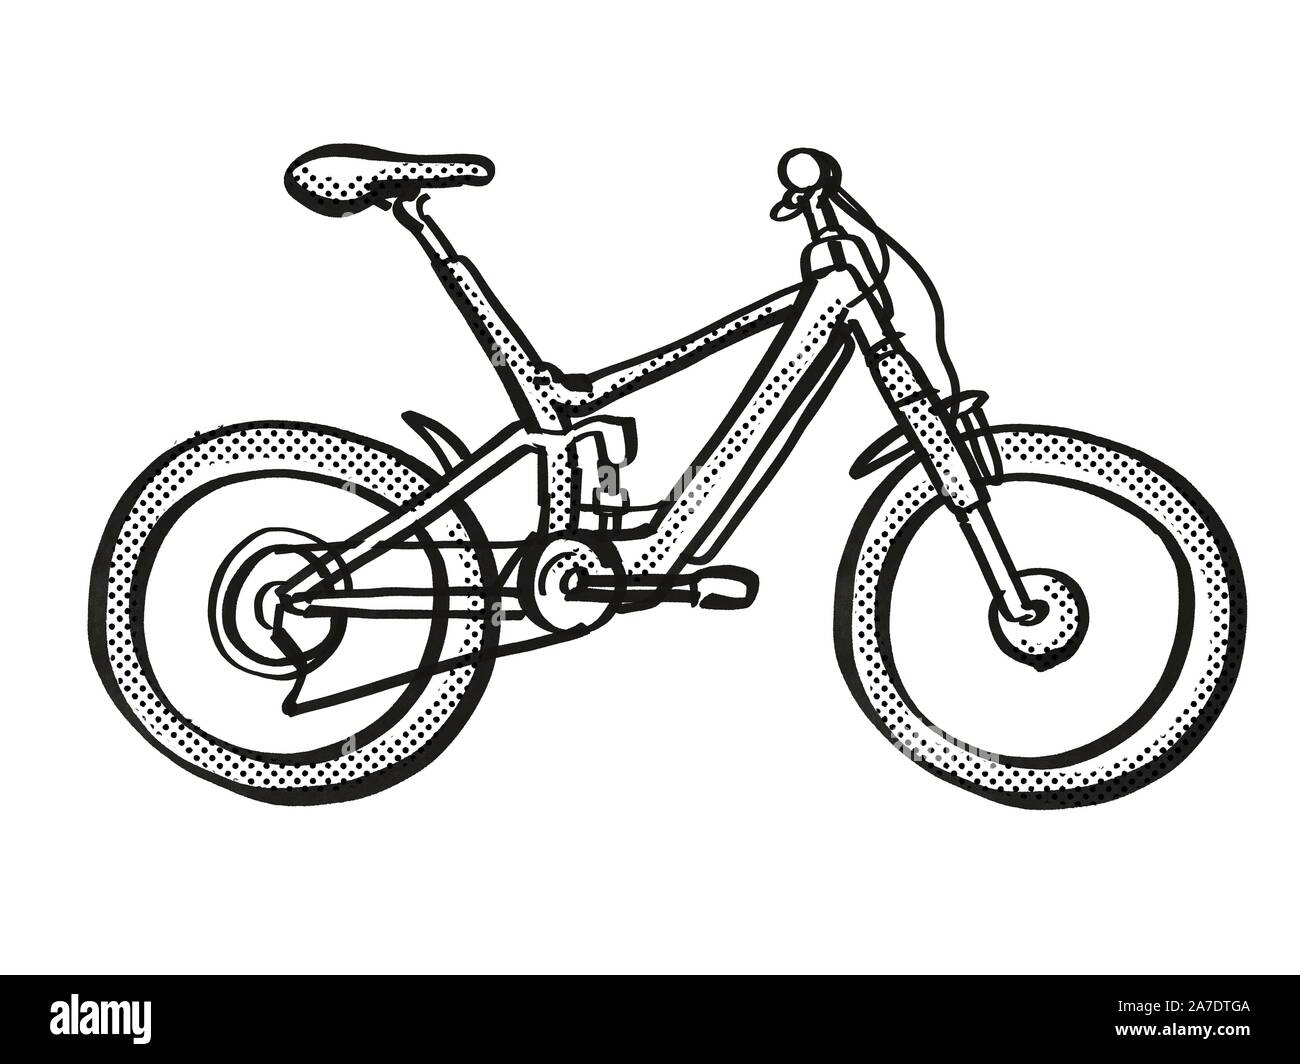 Retro cartoon style dessin d'un vélo électrique ou e-bike isolées sur fond  blanc en noir et blanc Photo Stock - Alamy